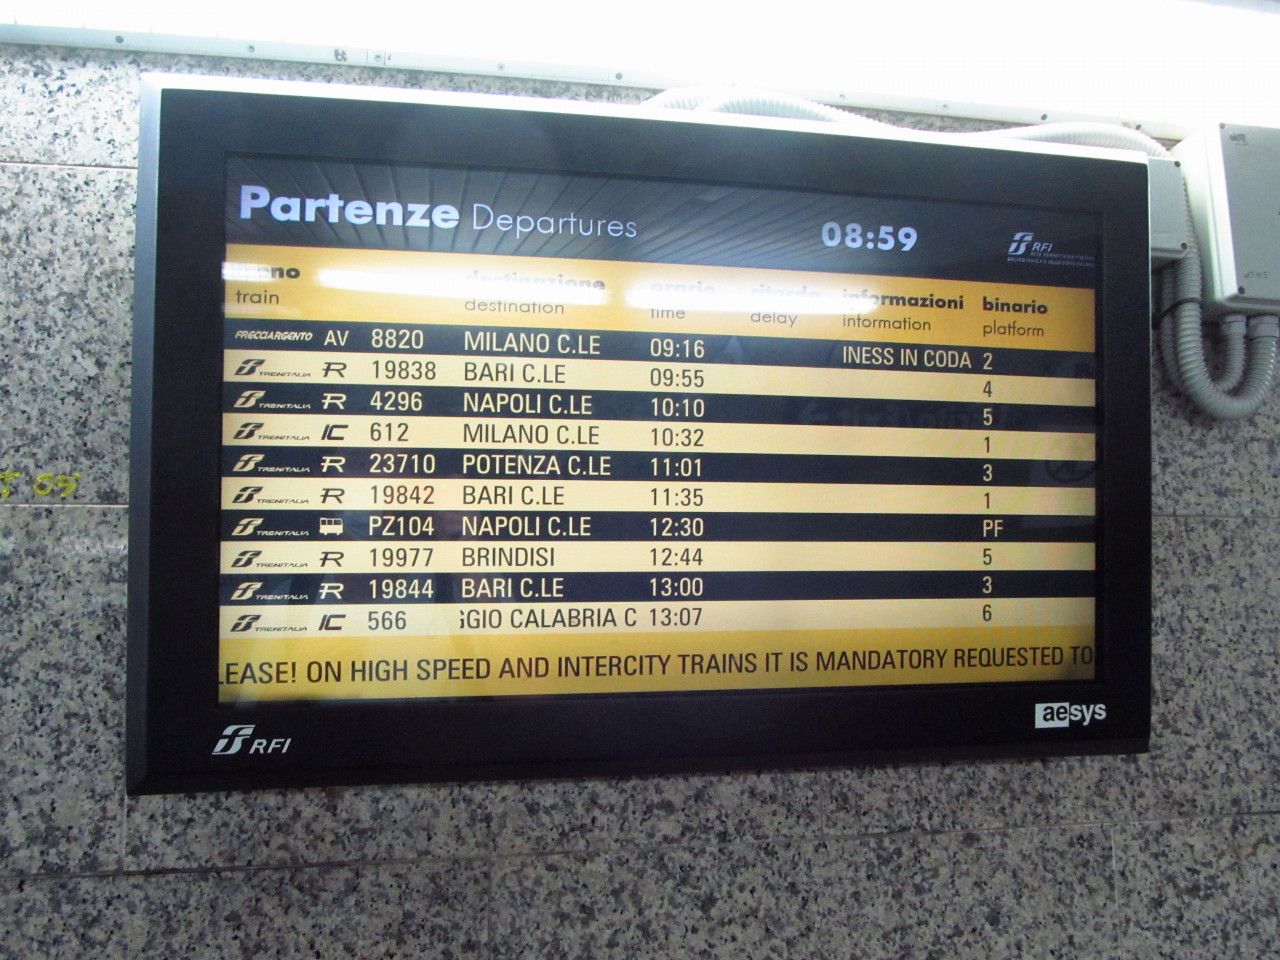 Taranto m 200 tis. obyv., ale ndra barirov, vlakov spojen na vechny strany dk...